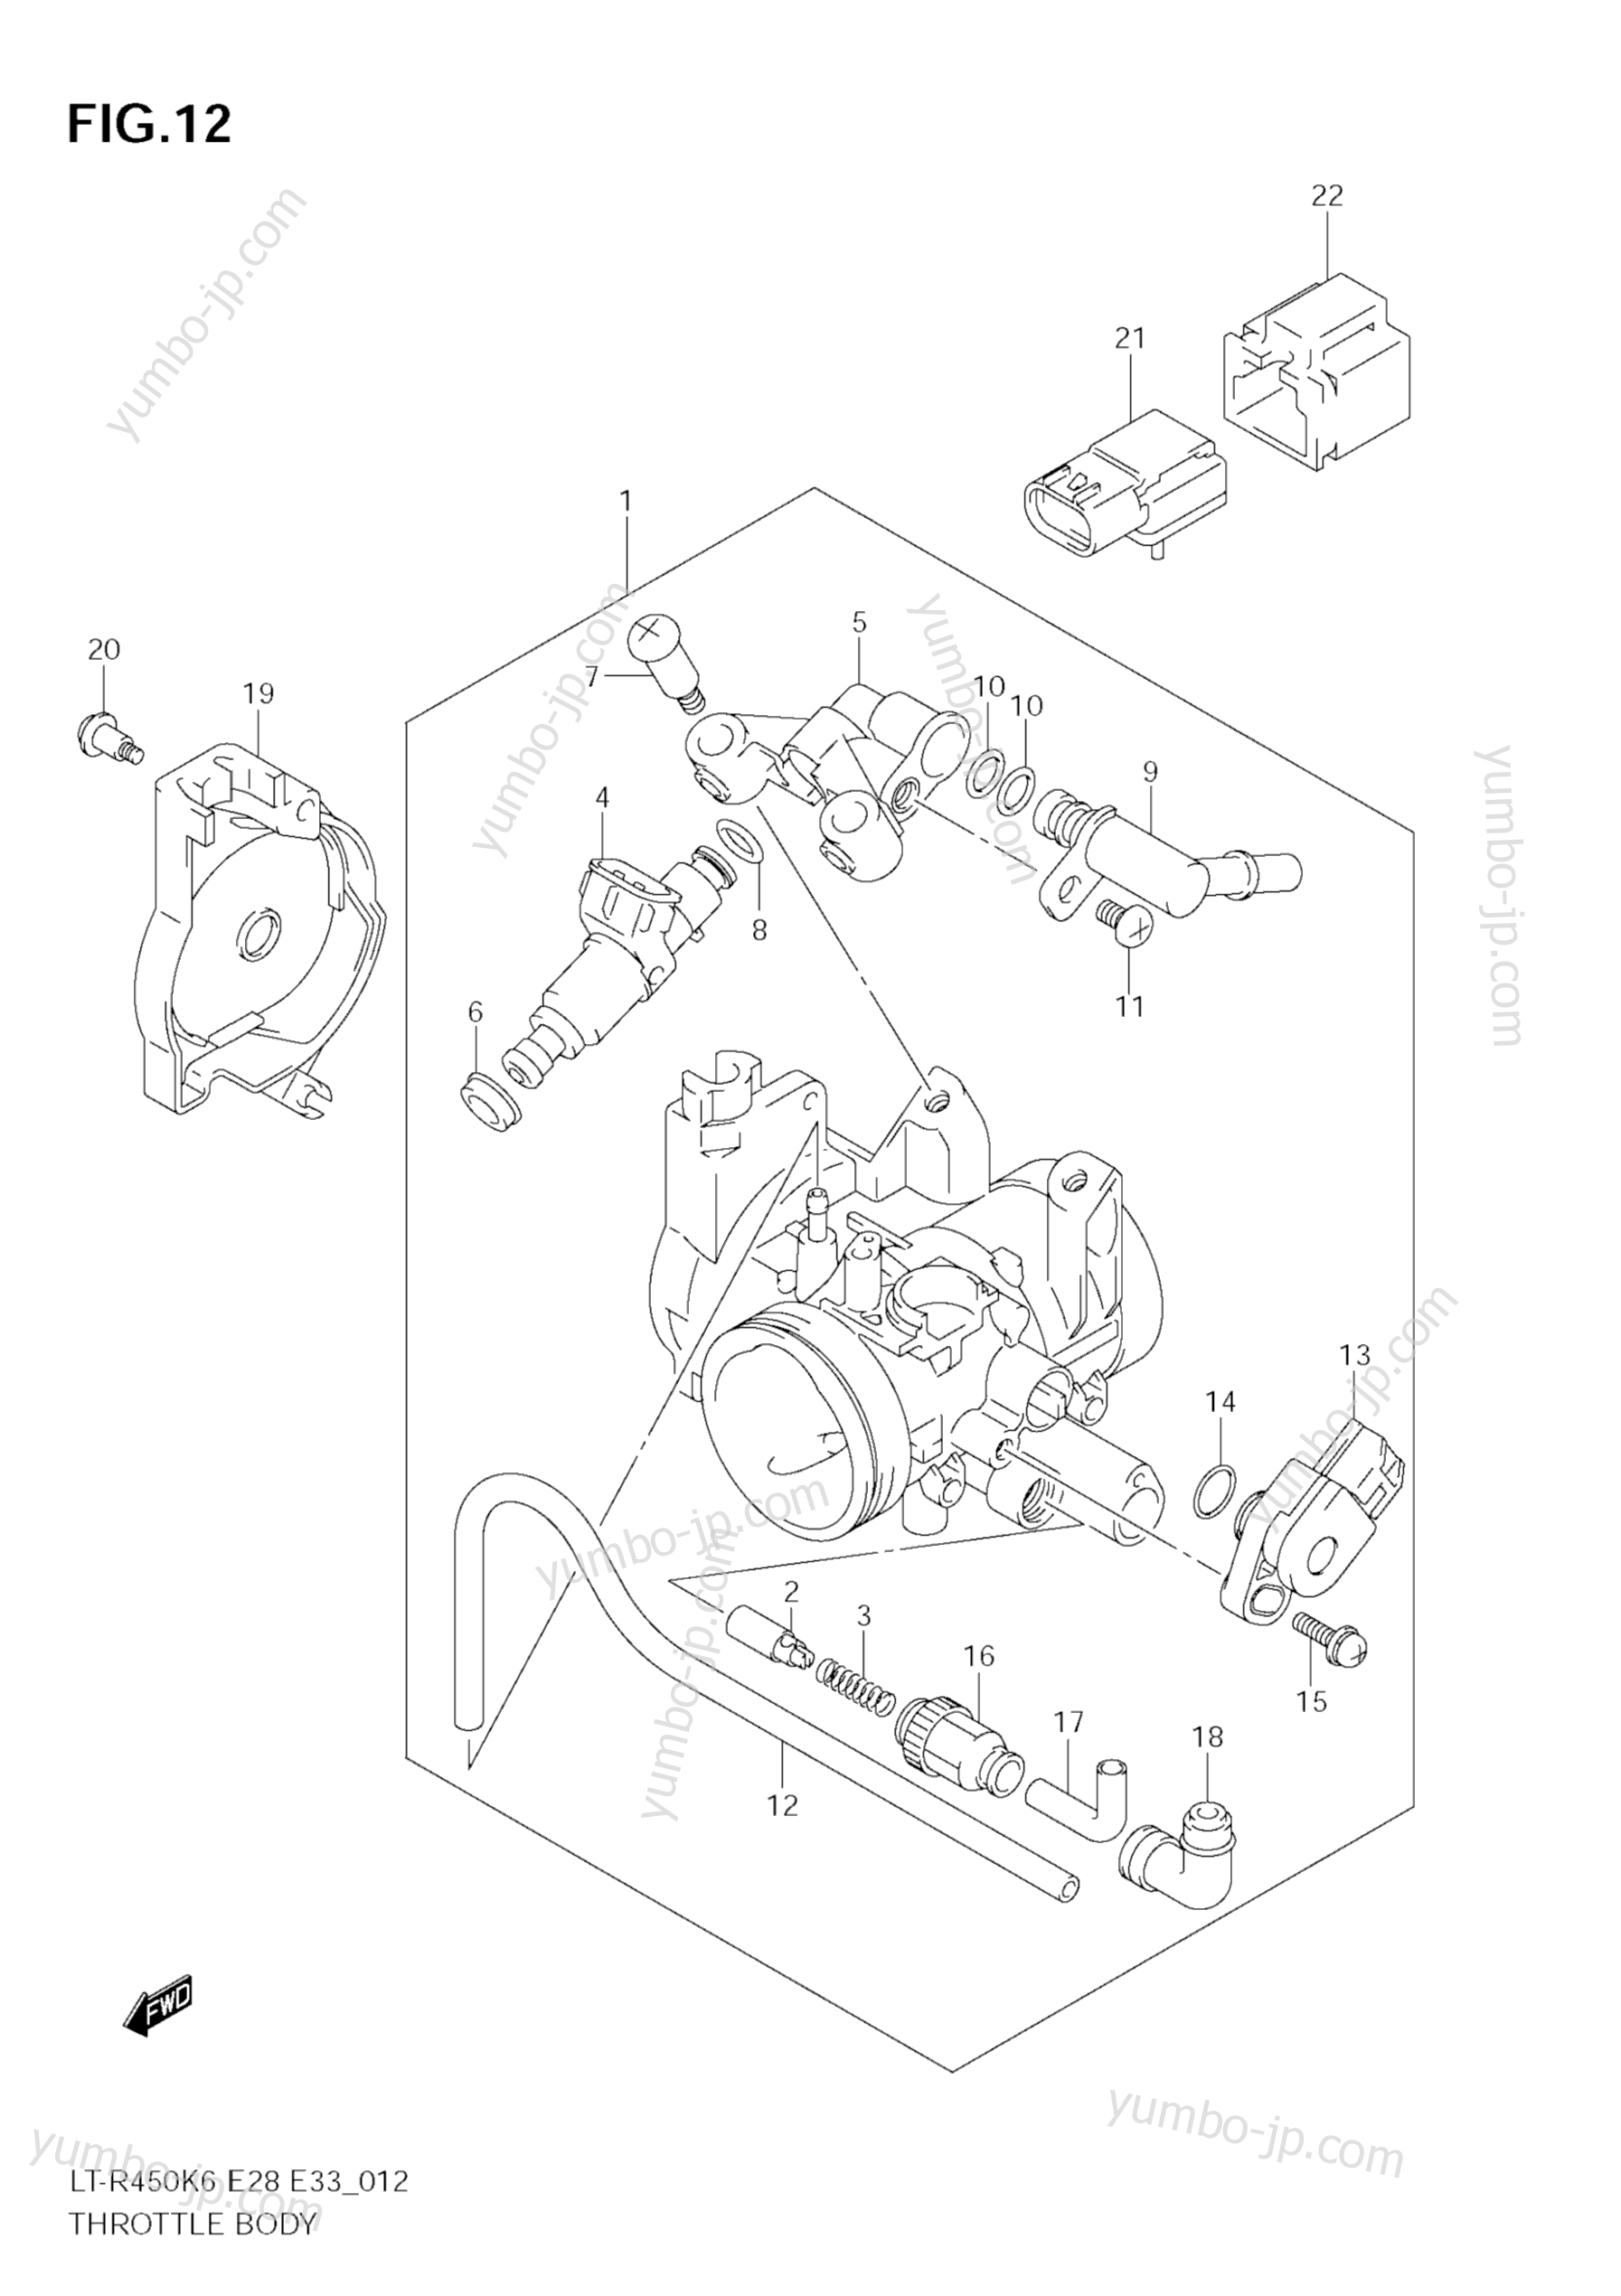 THROTTLE BODY (MODEL K6/K7/K8) for ATVs SUZUKI QuadRacer (LT-R450) 2008 year